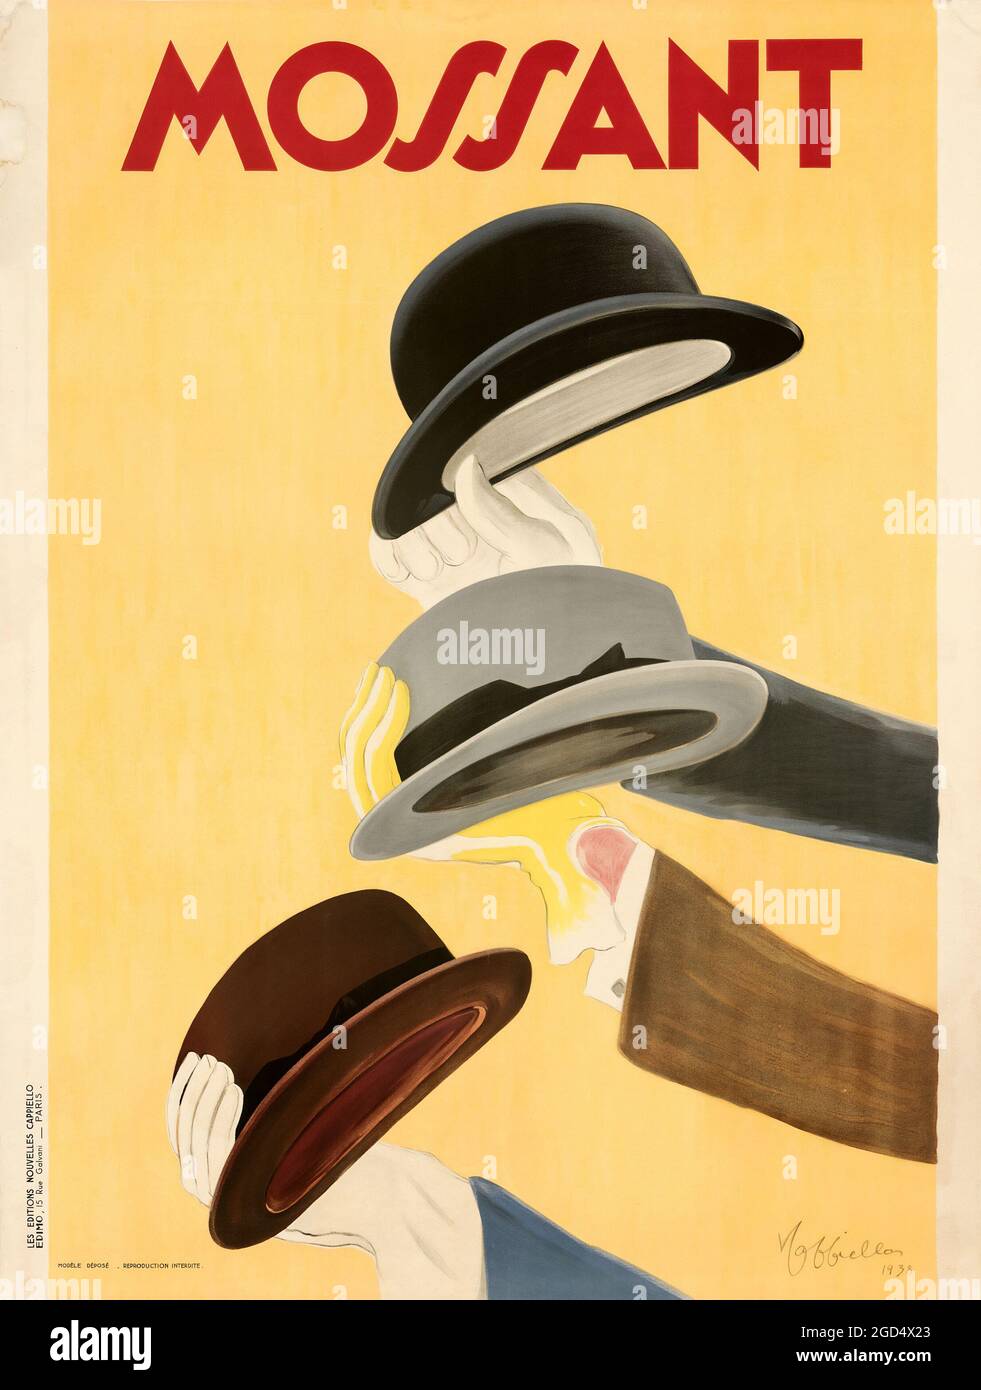 Französisches Poster – Kunstwerk von Leonetto Cappiello. Hohe Auflösung. Digital verbessert/verbessert. Mossant 1938. Stockfoto